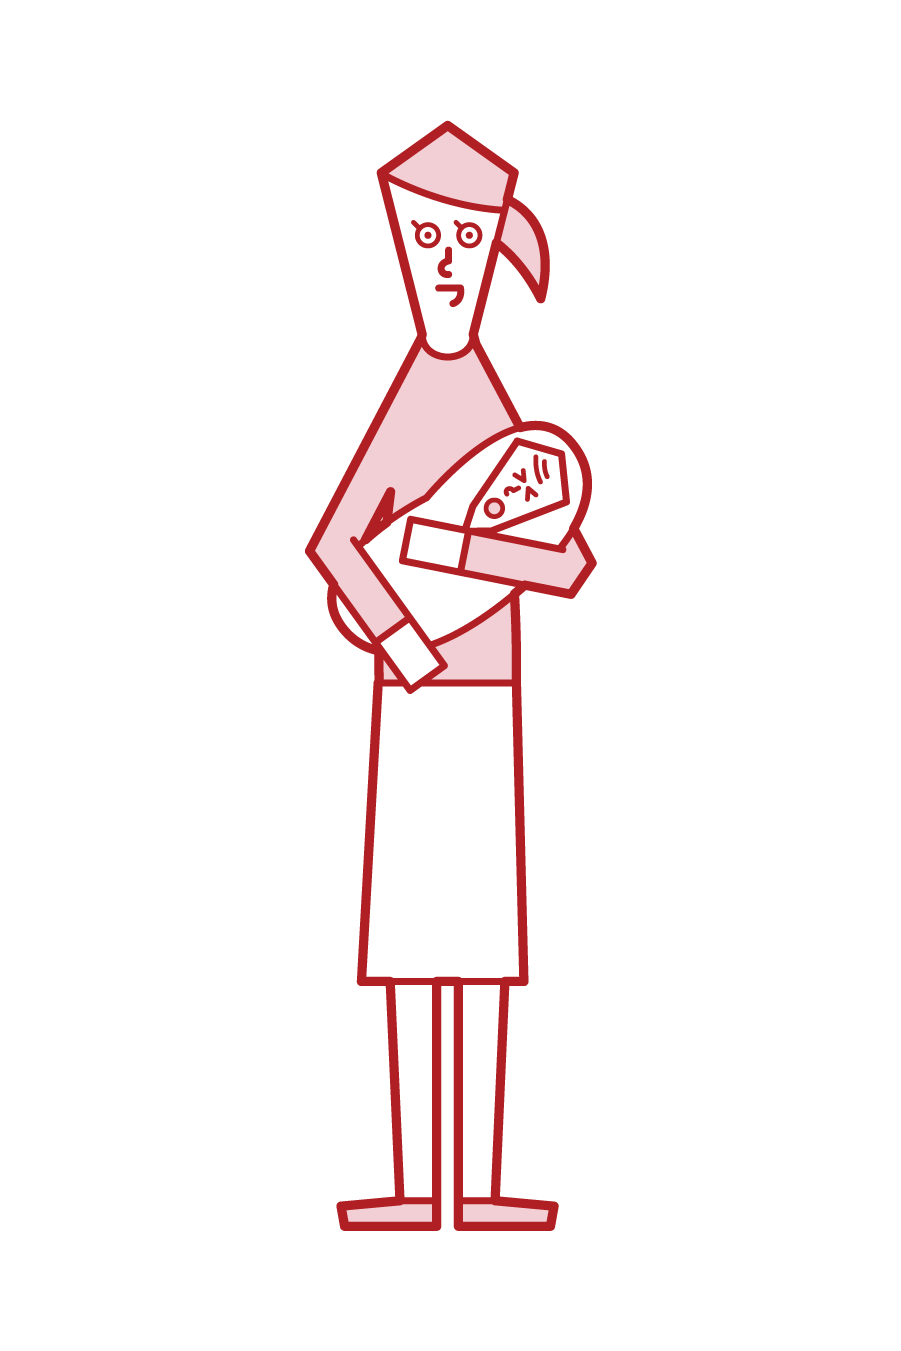 擁抱嬰兒的人（女性）的插圖